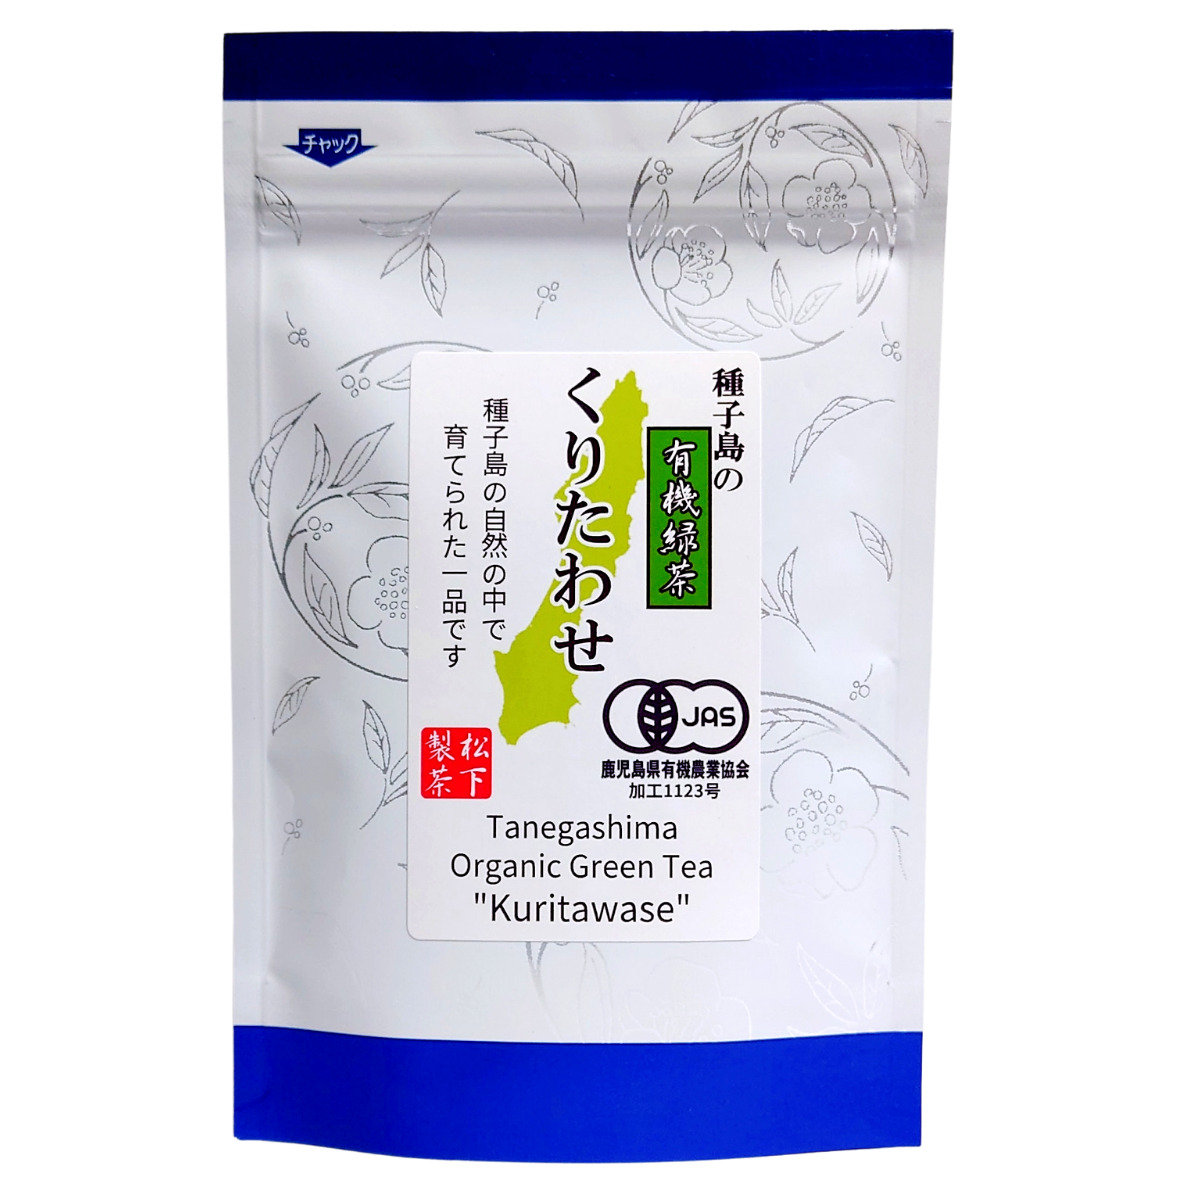 【希少品種】種子島の有機緑茶『くりたわせ』 茶葉(リーフ) 50g 松下製茶